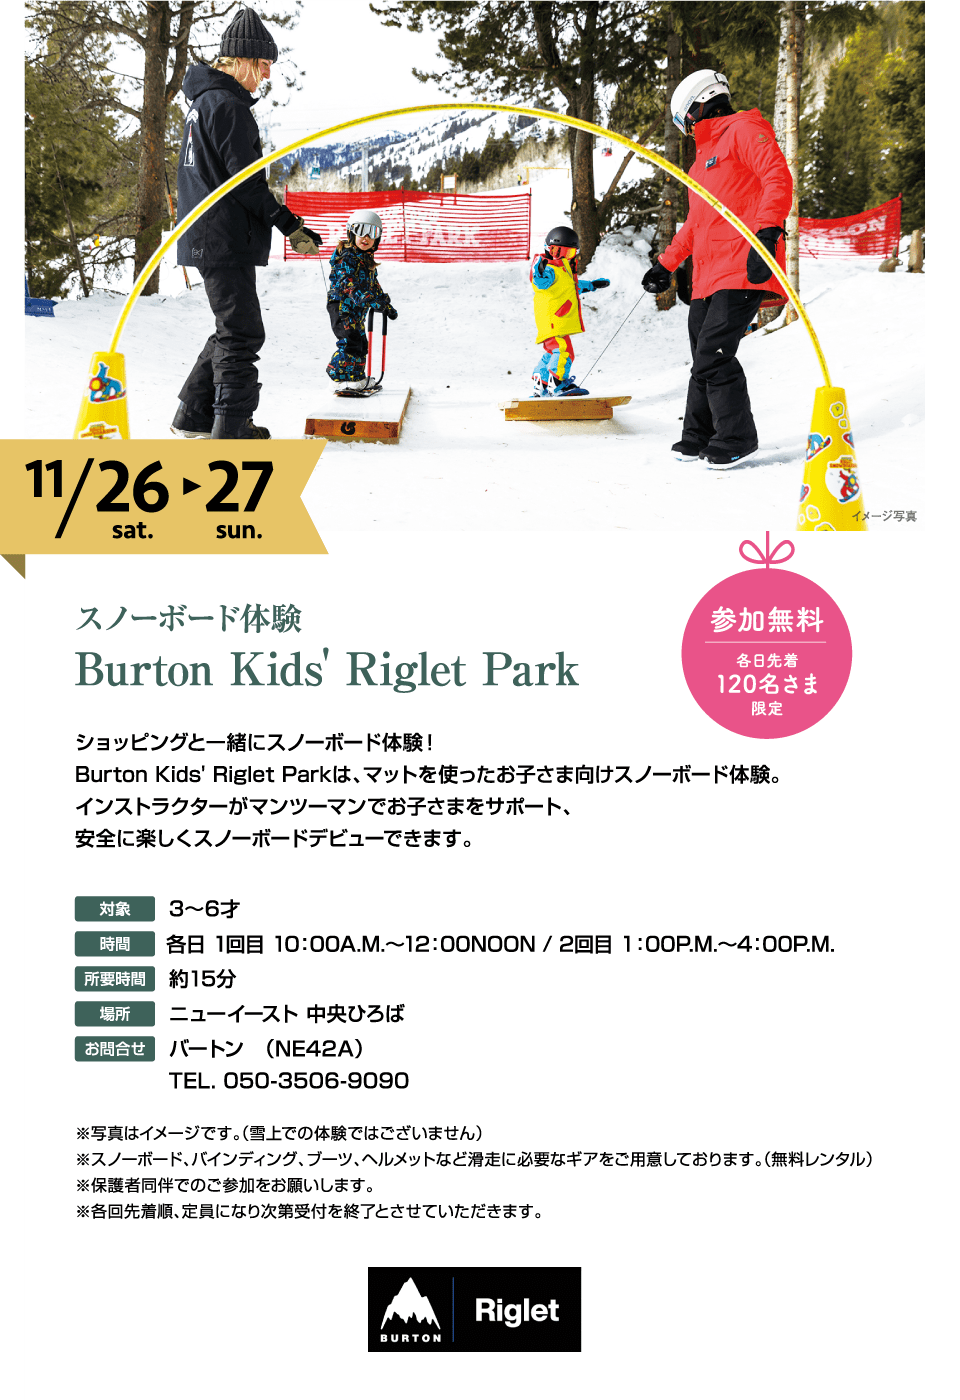 スノーボード体験 Burton Kids' Riglet Park